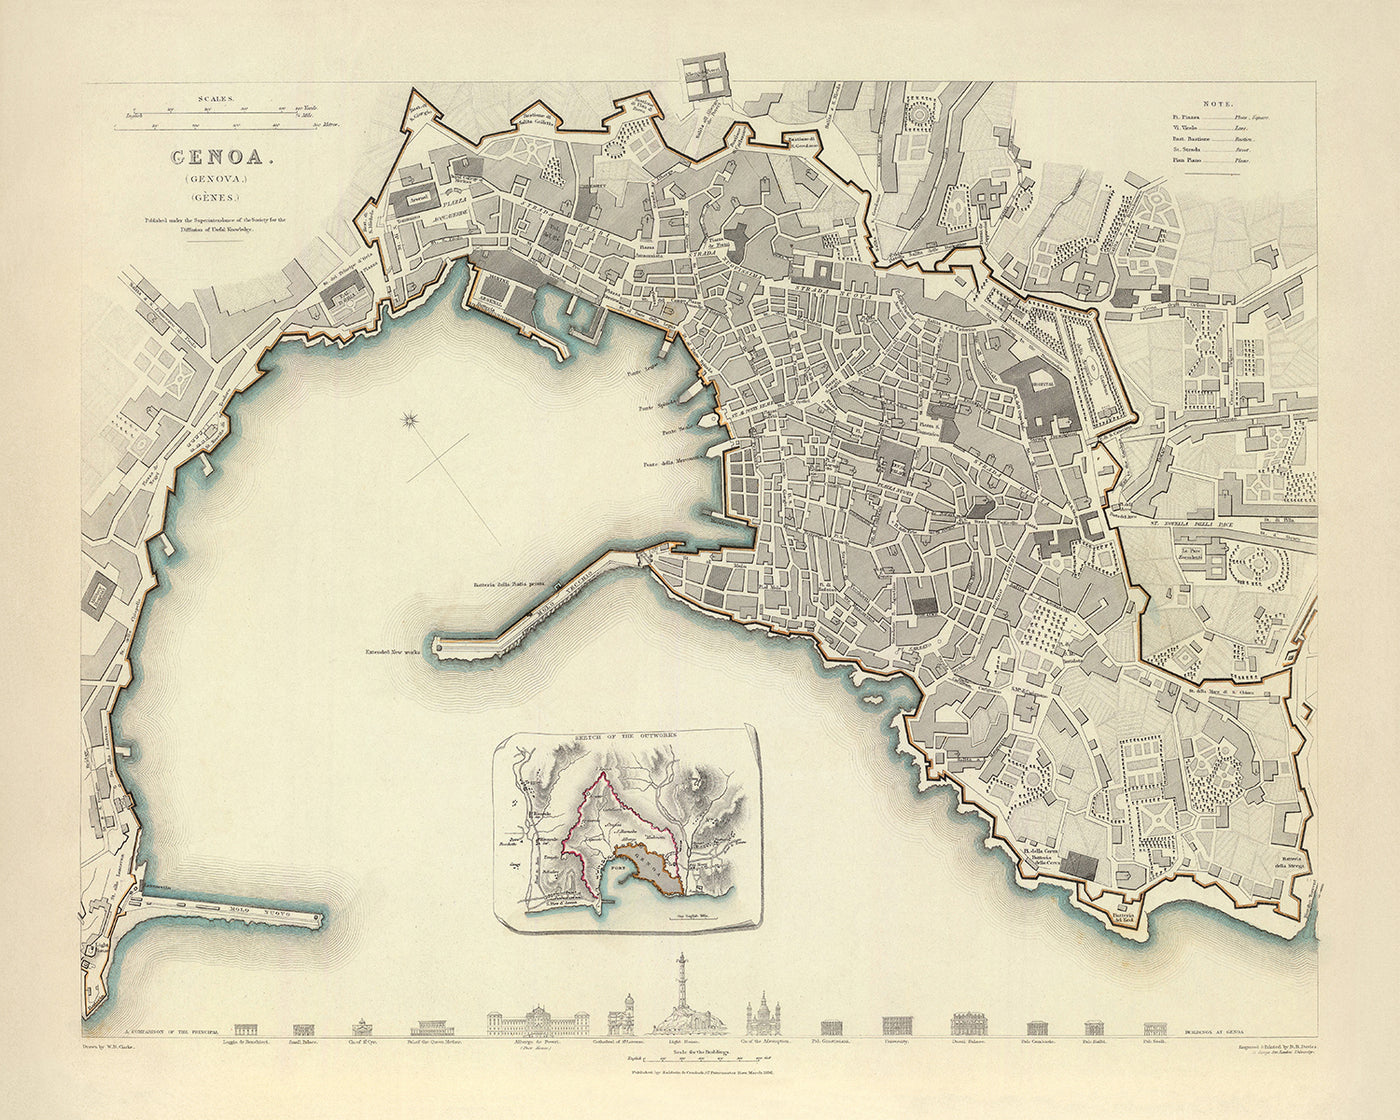 Alte Karte von Genua von Clarke, 1836: Kathedrale, Palazzo Ducale, Leuchtturm, Carlo Felice Theater, Universität